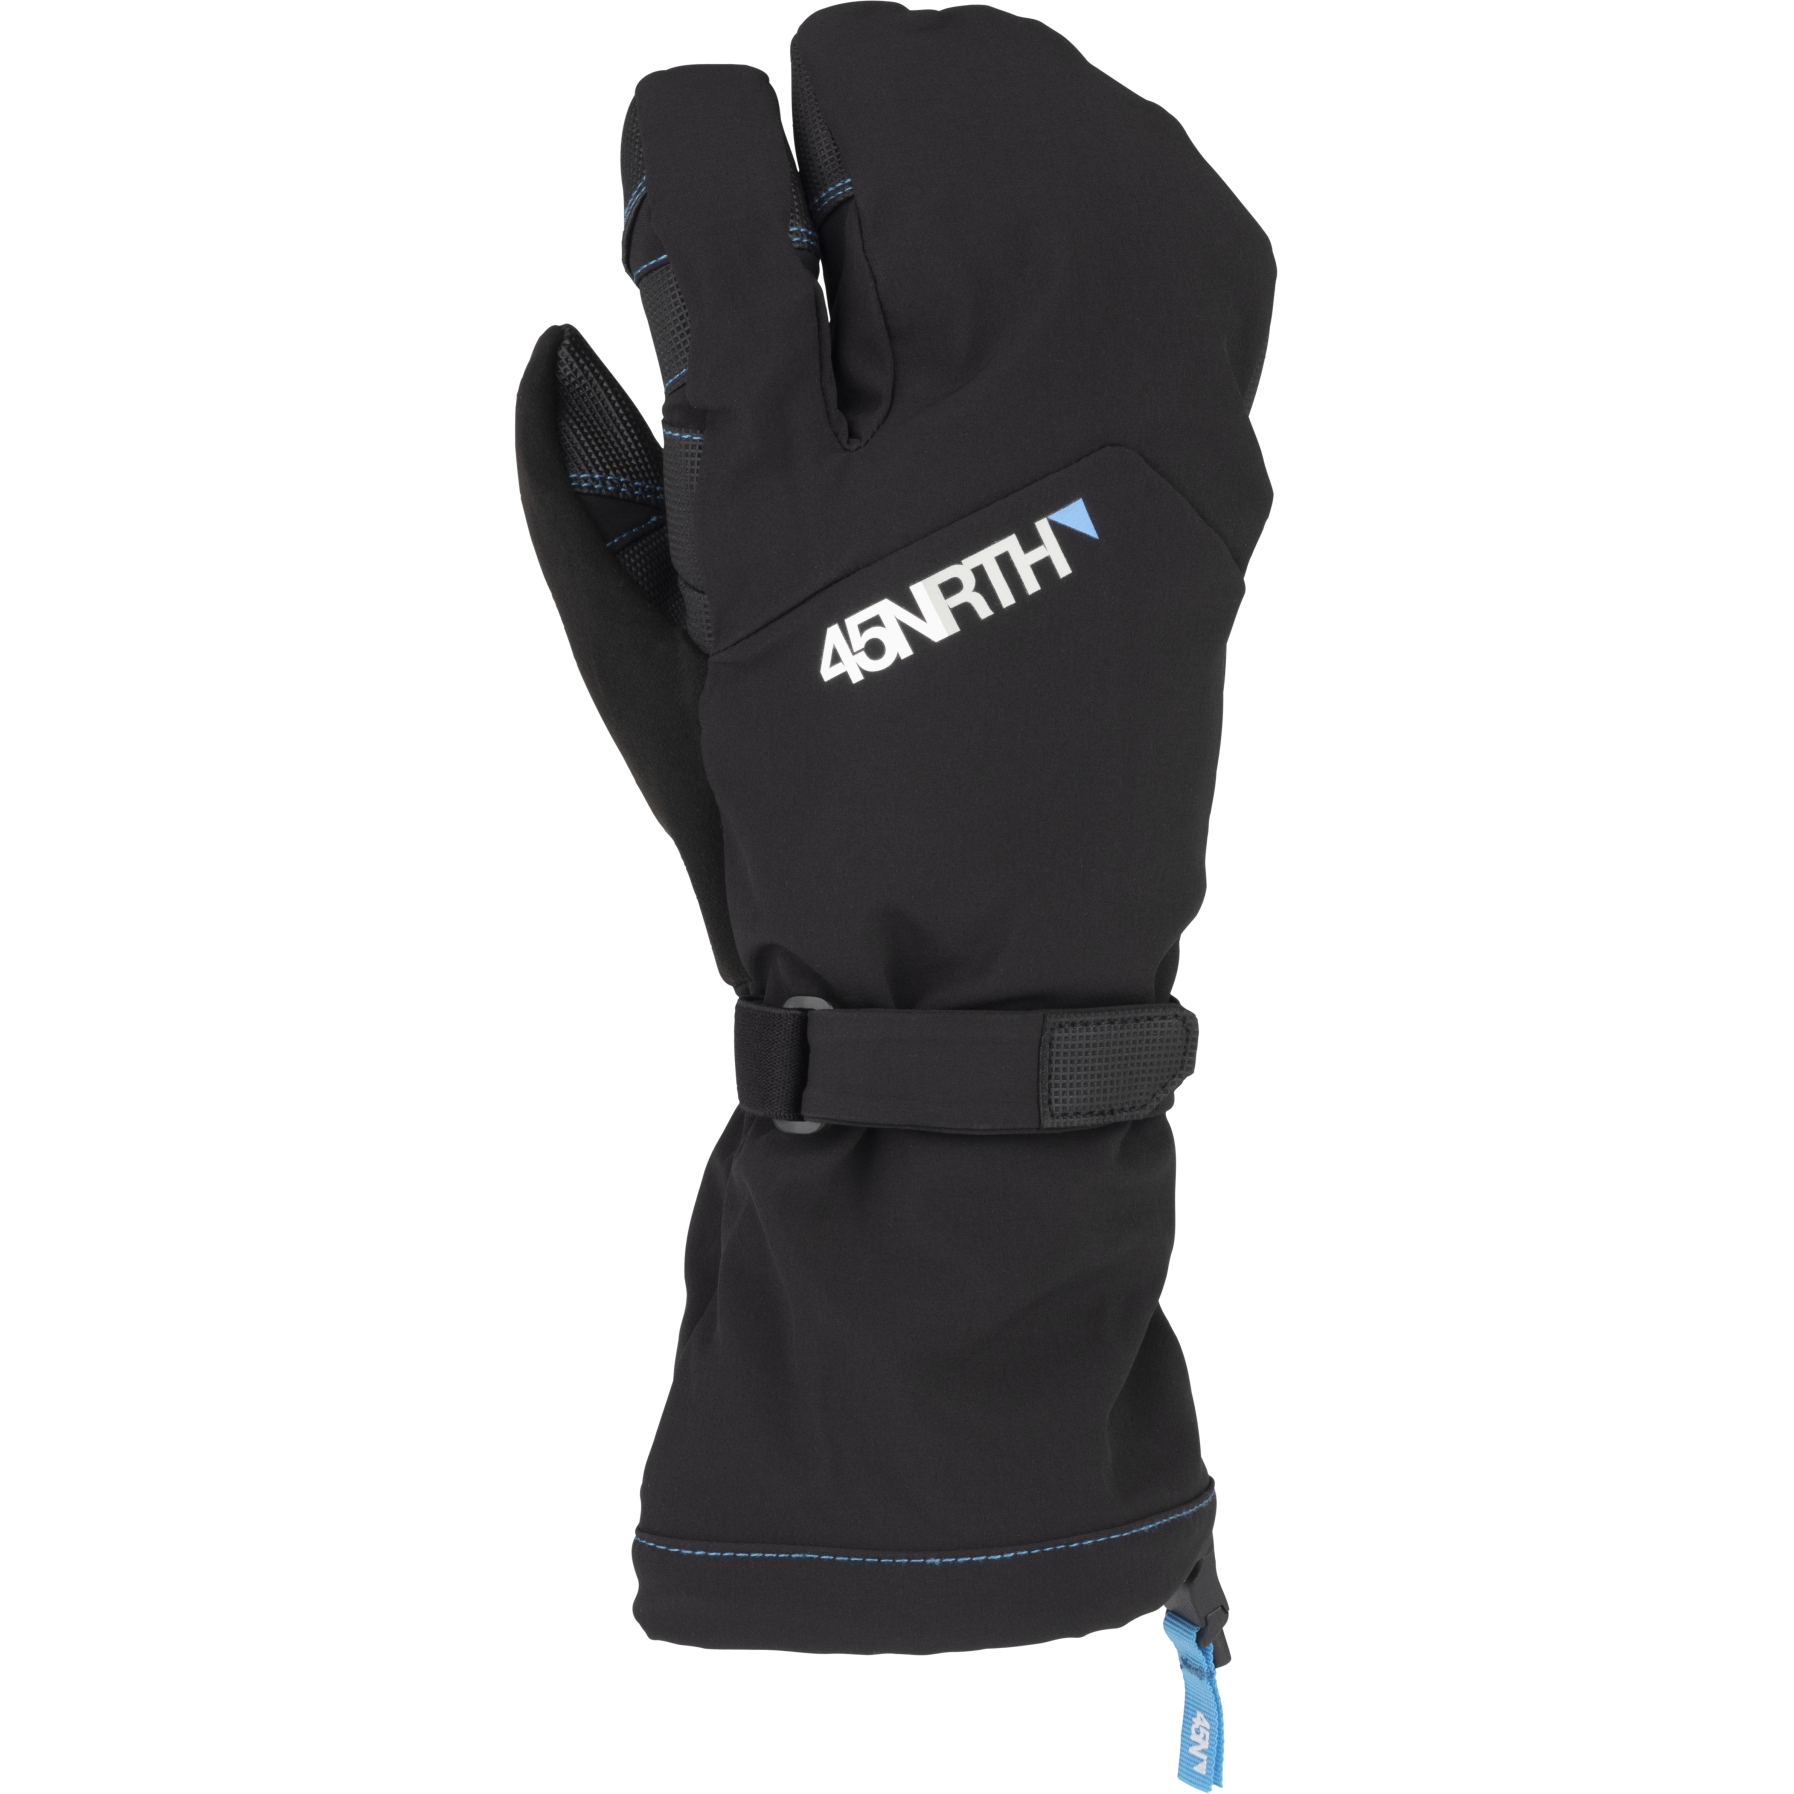 Produktbild von 45NRTH Sturmfist 3 Handschuhe - schwarz